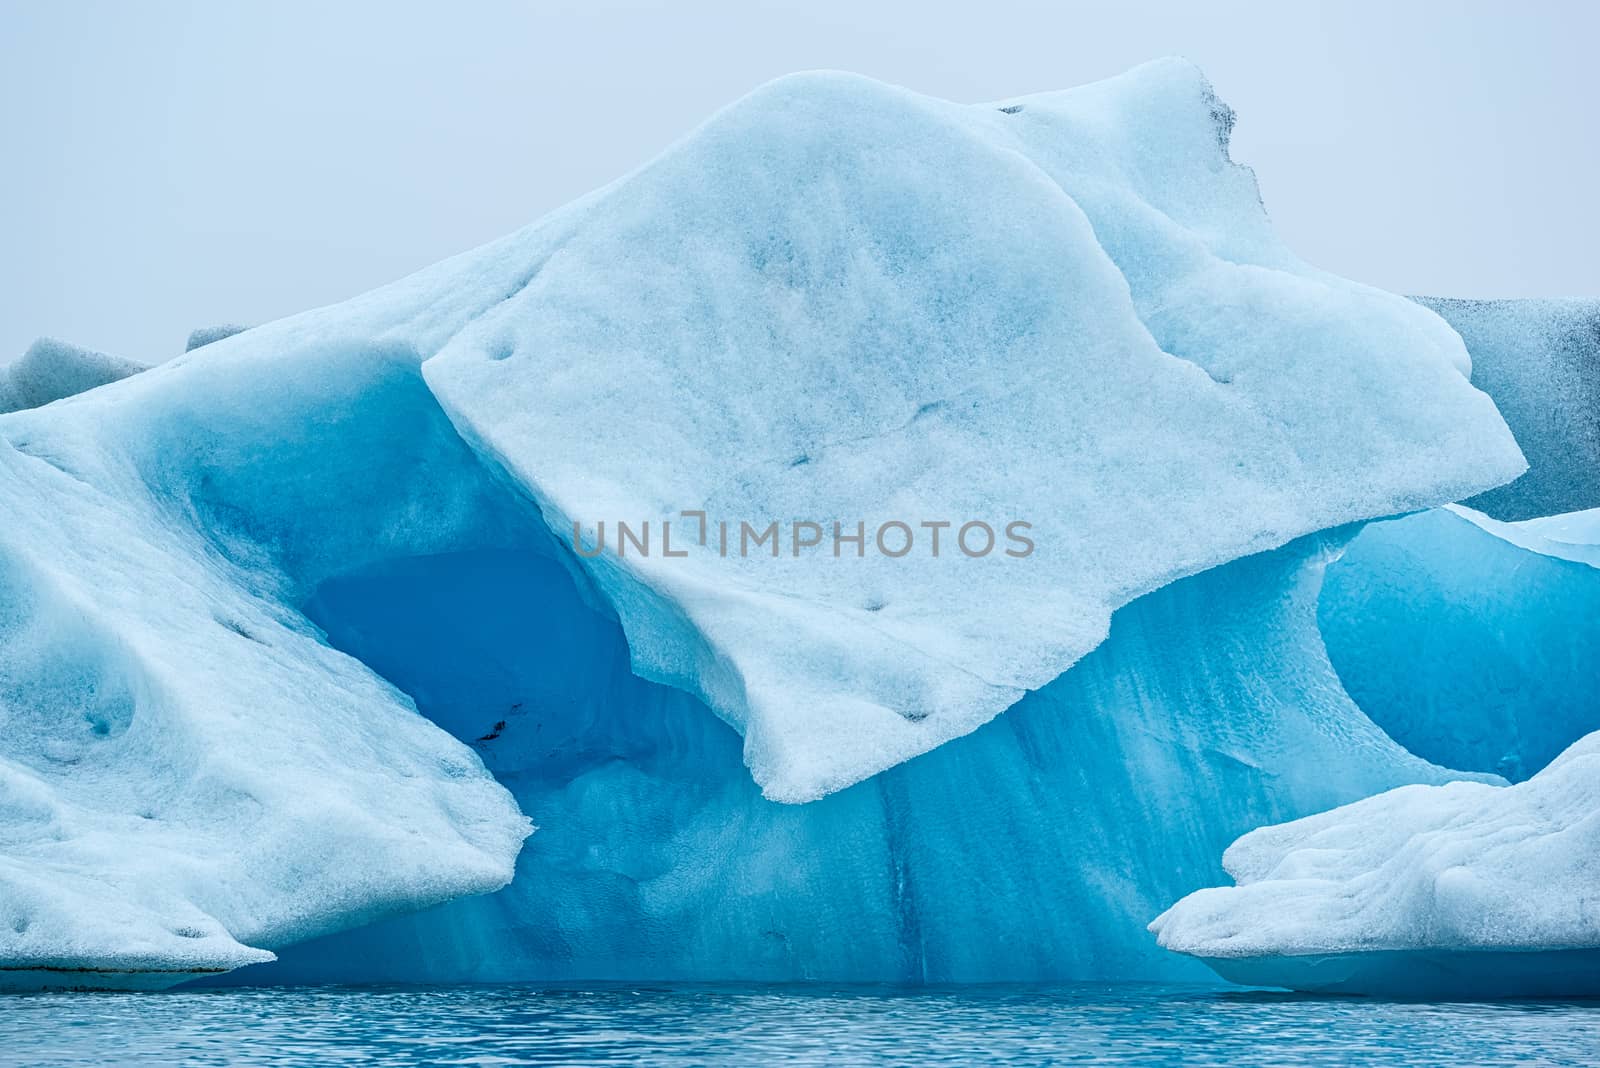 Icebergs in the Jokulsarlon's lake near Vatnajokull glacier, Iceland